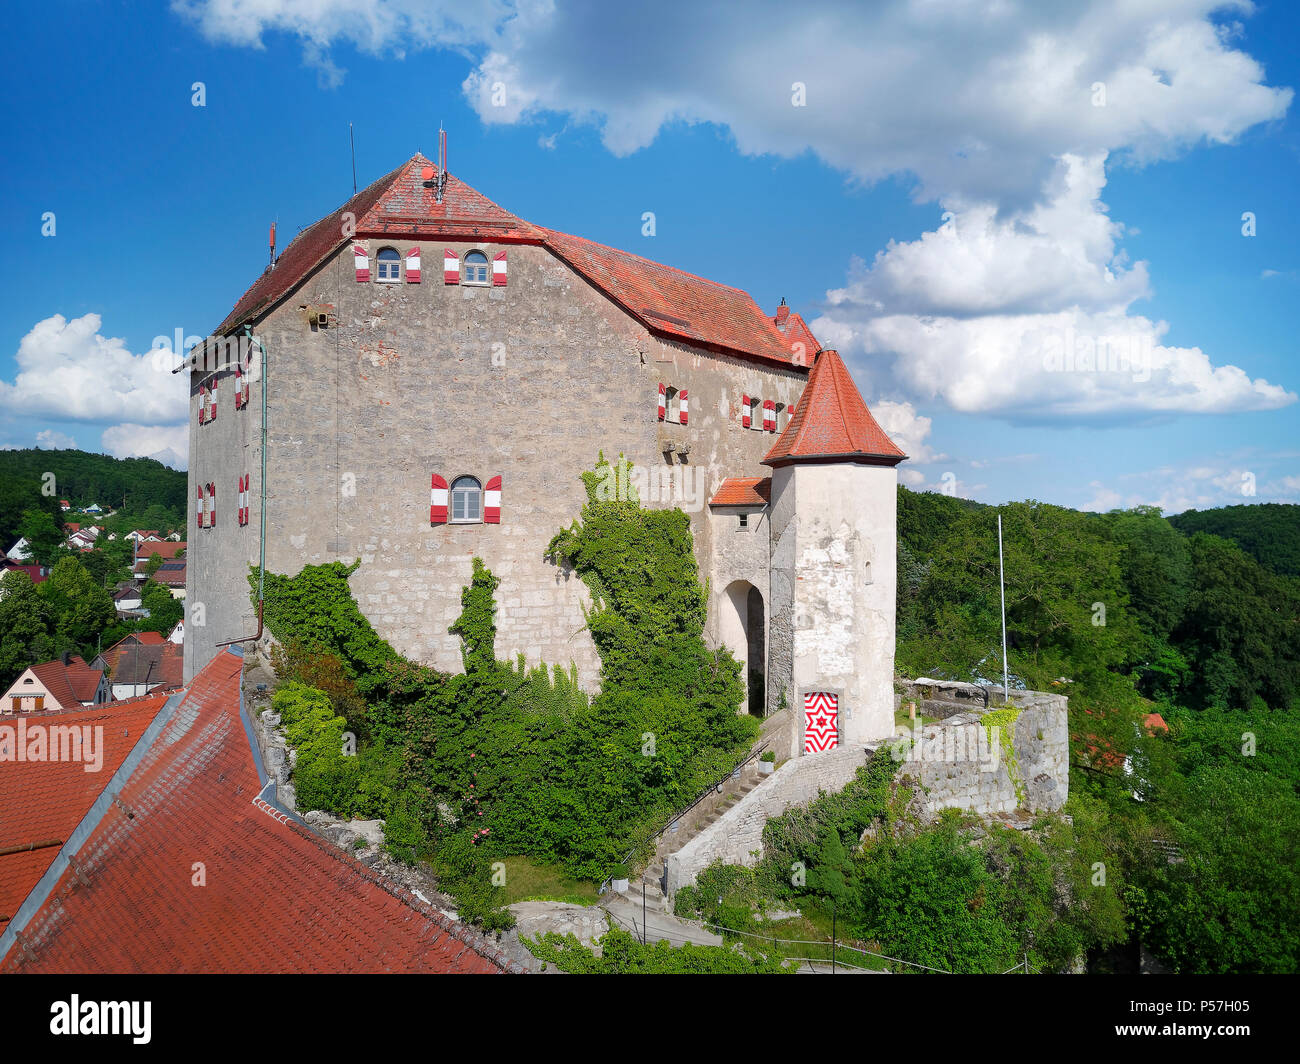 Burg Hiltpoltstein, fränkische Switzerland-Veldenstein wald natur park  Park, Oberfranken, Franken, Bayern, Deutschland Stockfotografie - Alamy